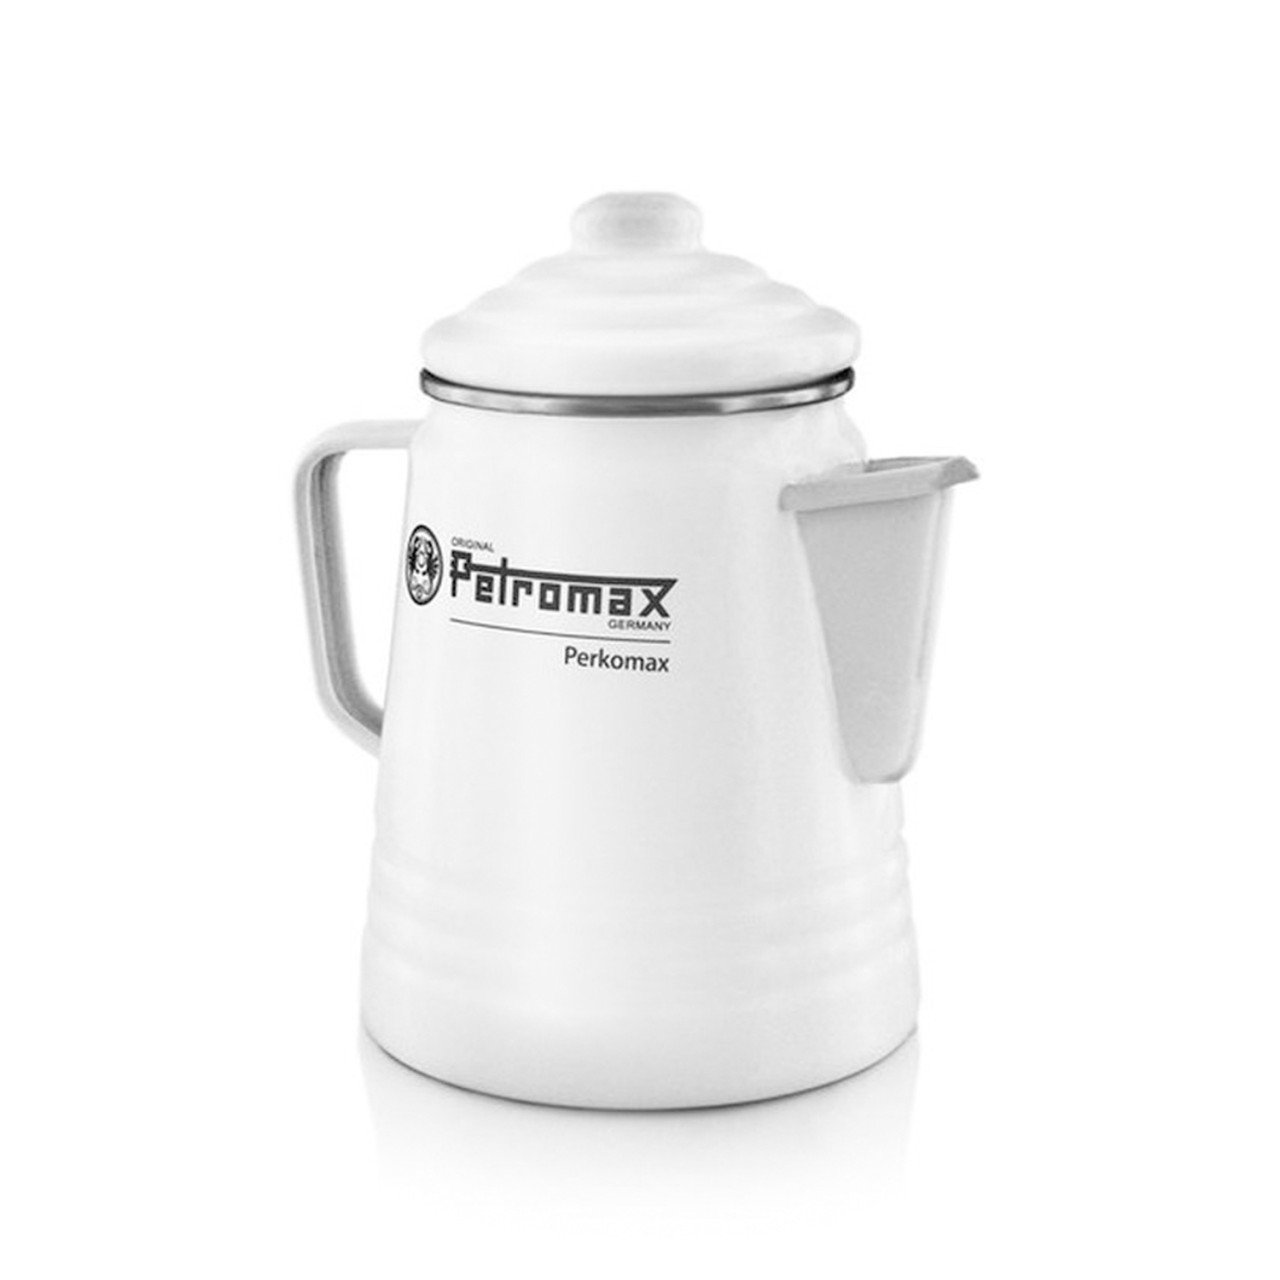 Petromax Perkolator per-9-w – Kaffee Tee Kanne – 1,3l – weiß